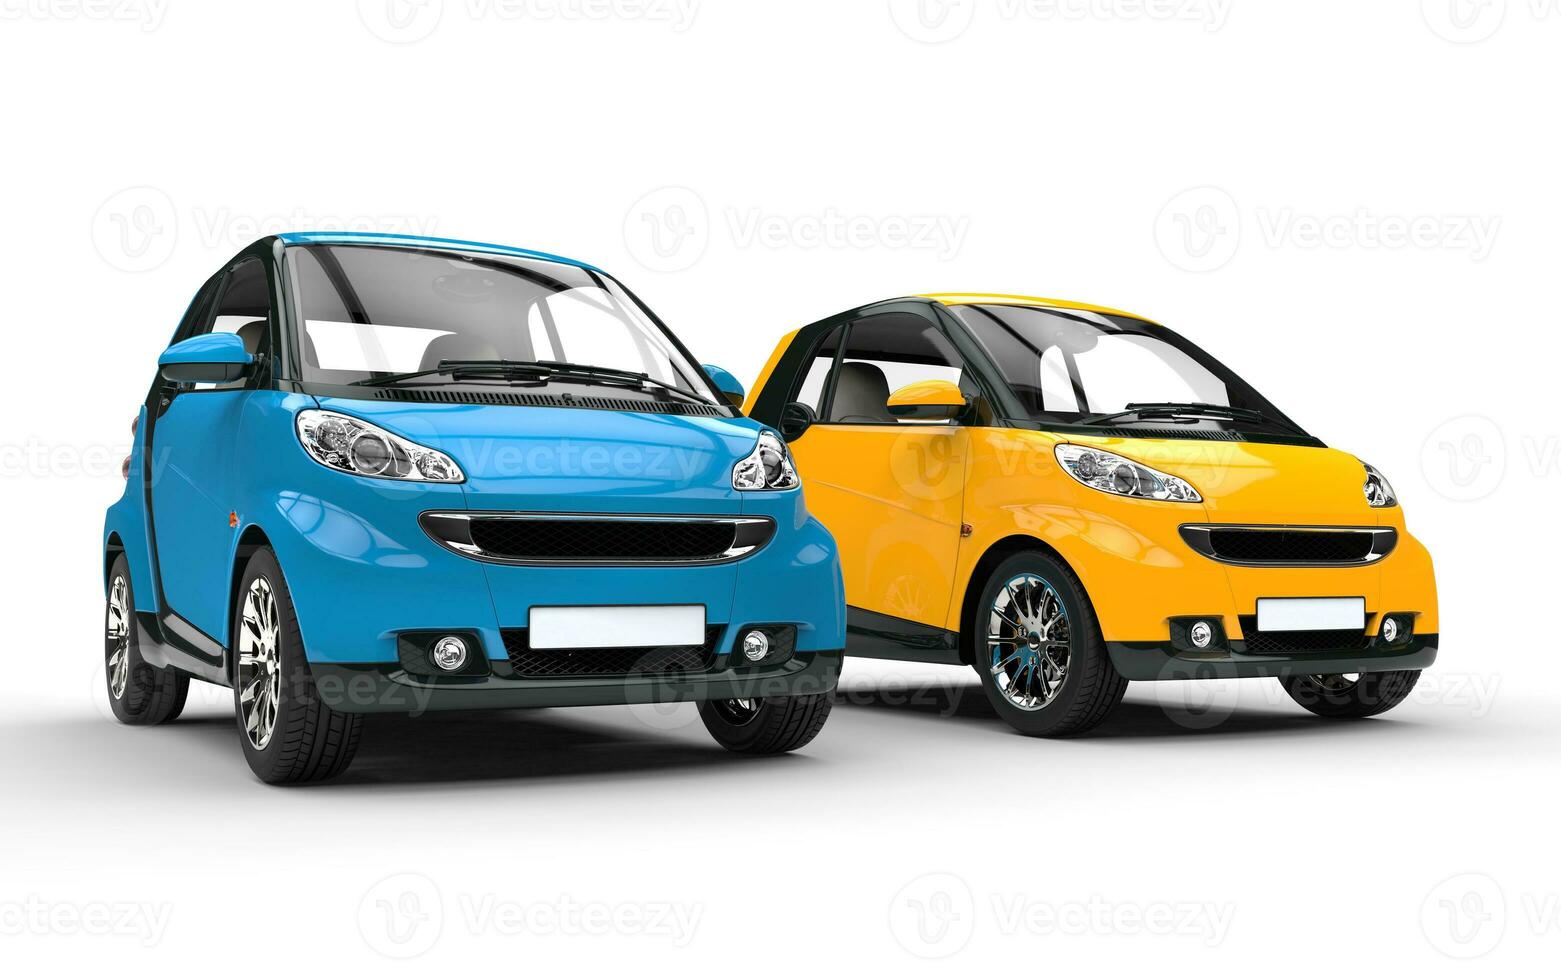 azul e amarelo pequeno carros foto